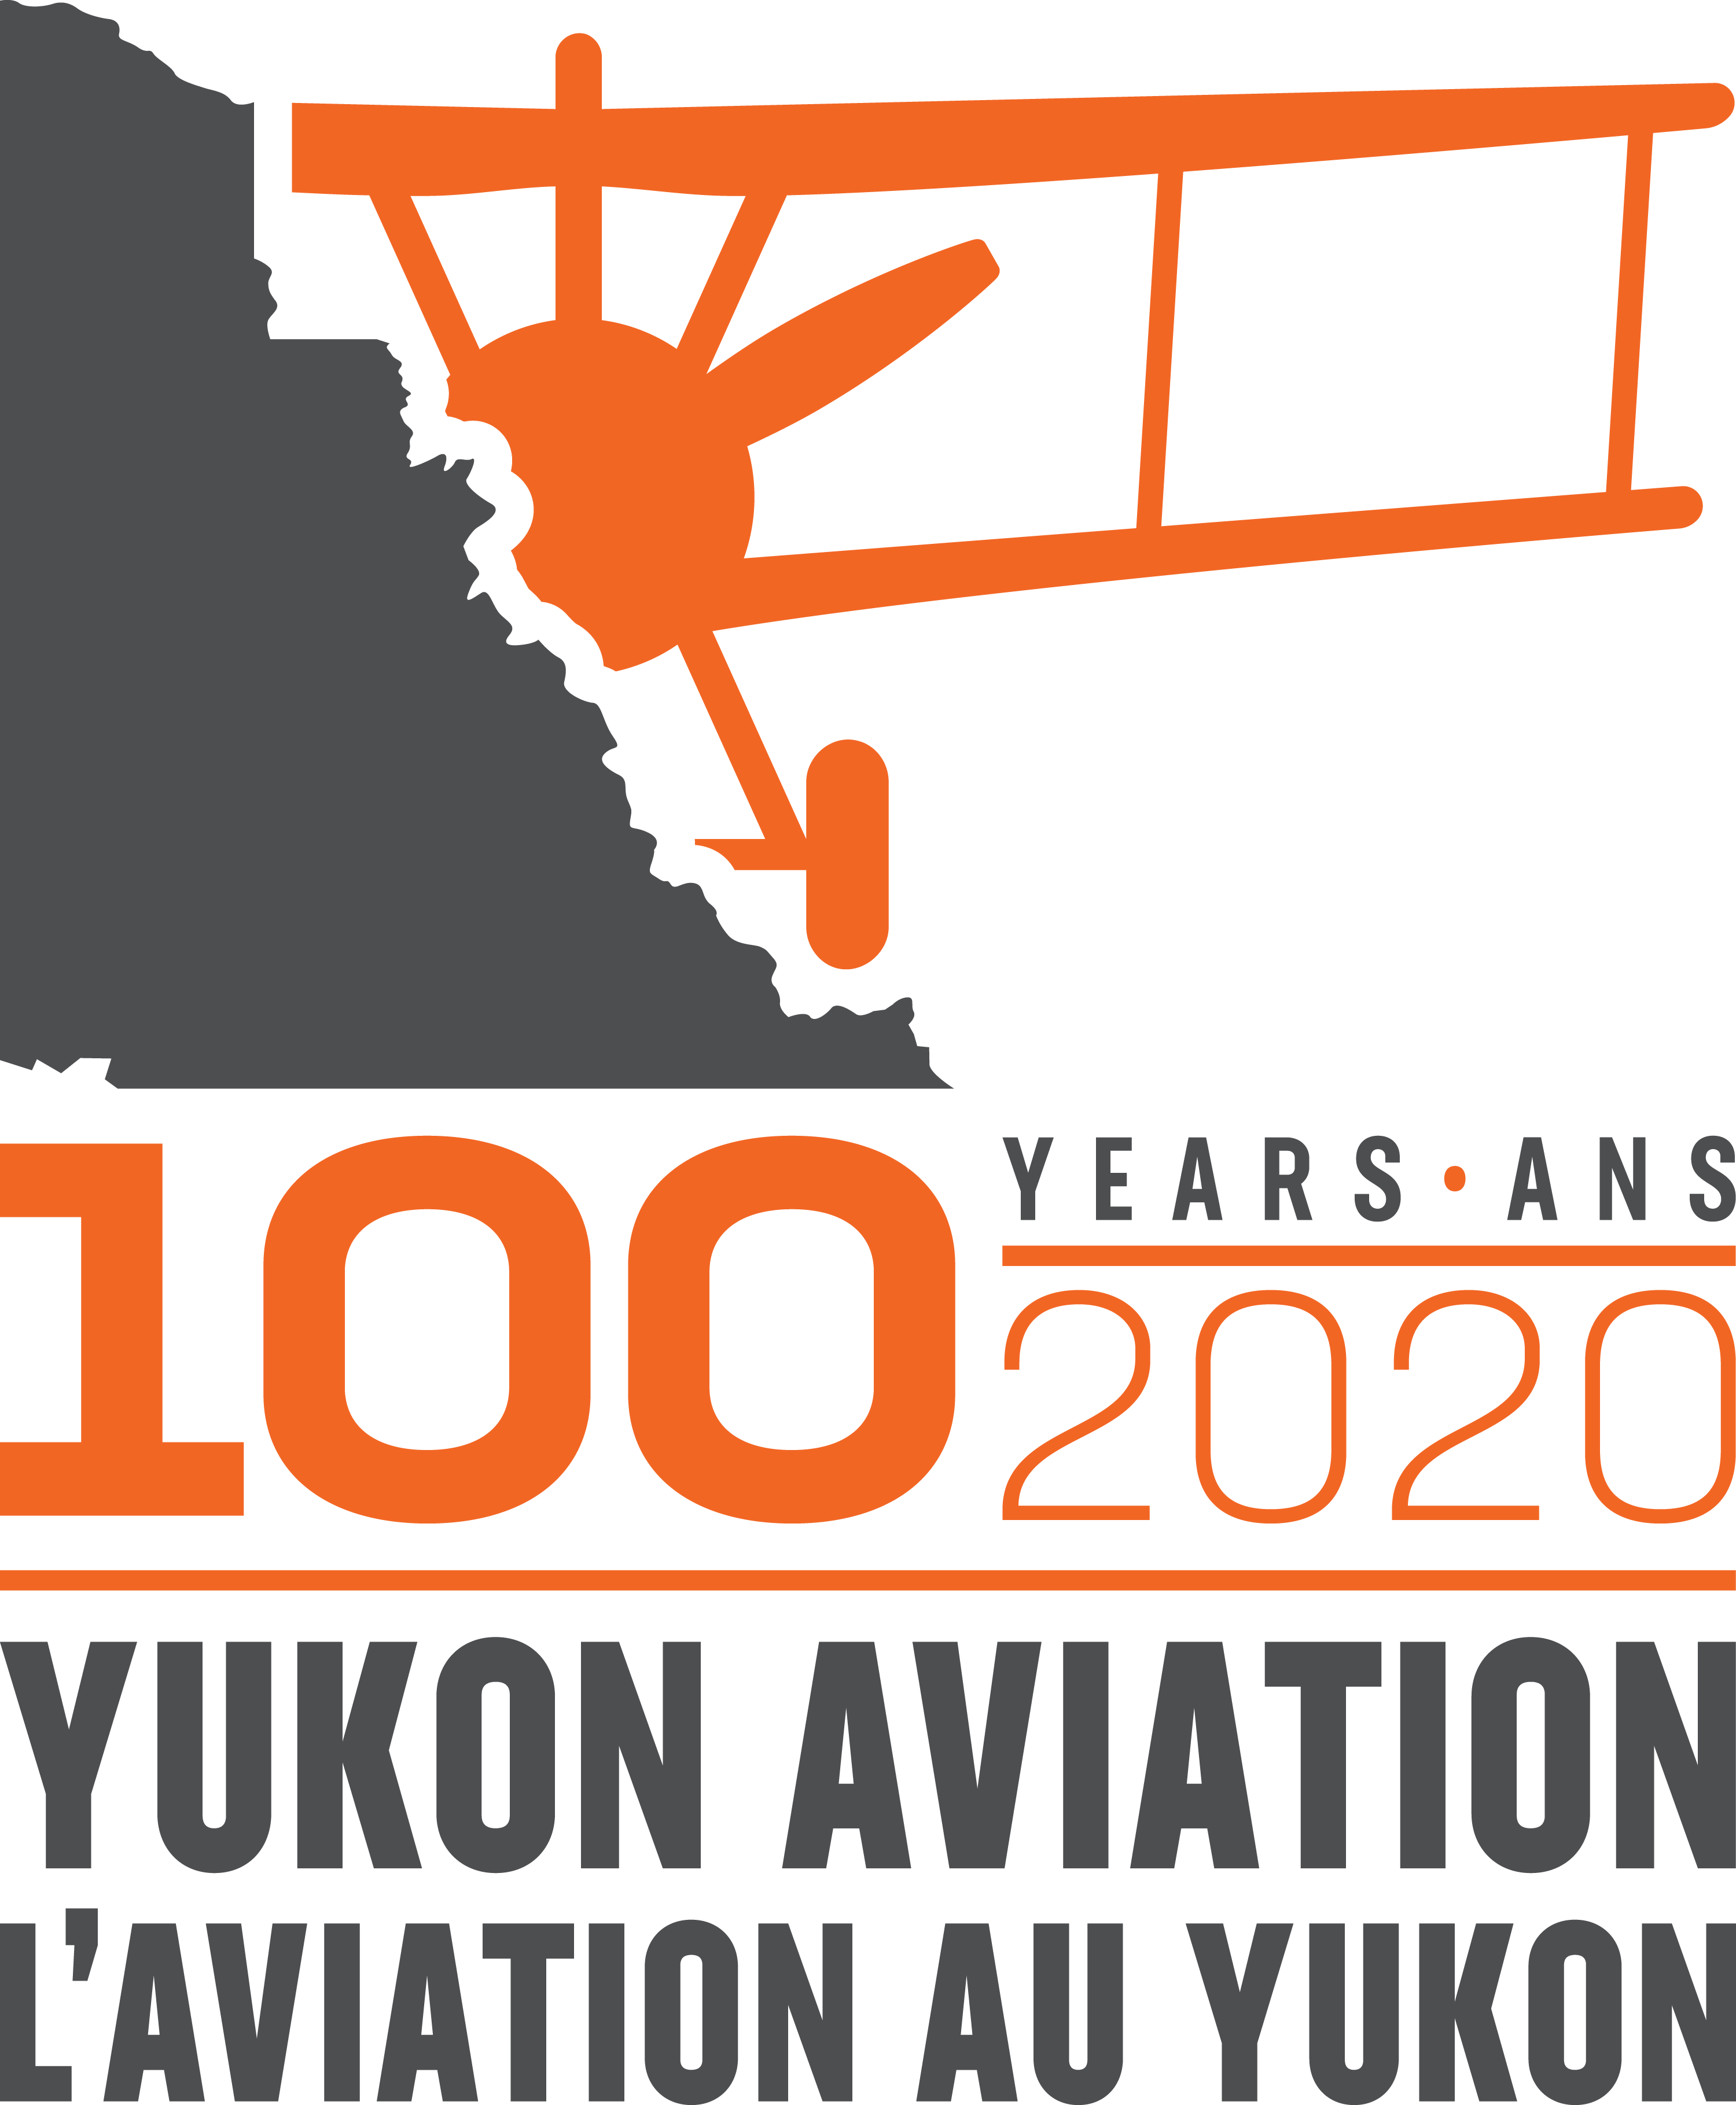 Yukon’s next 100 years of aviation 